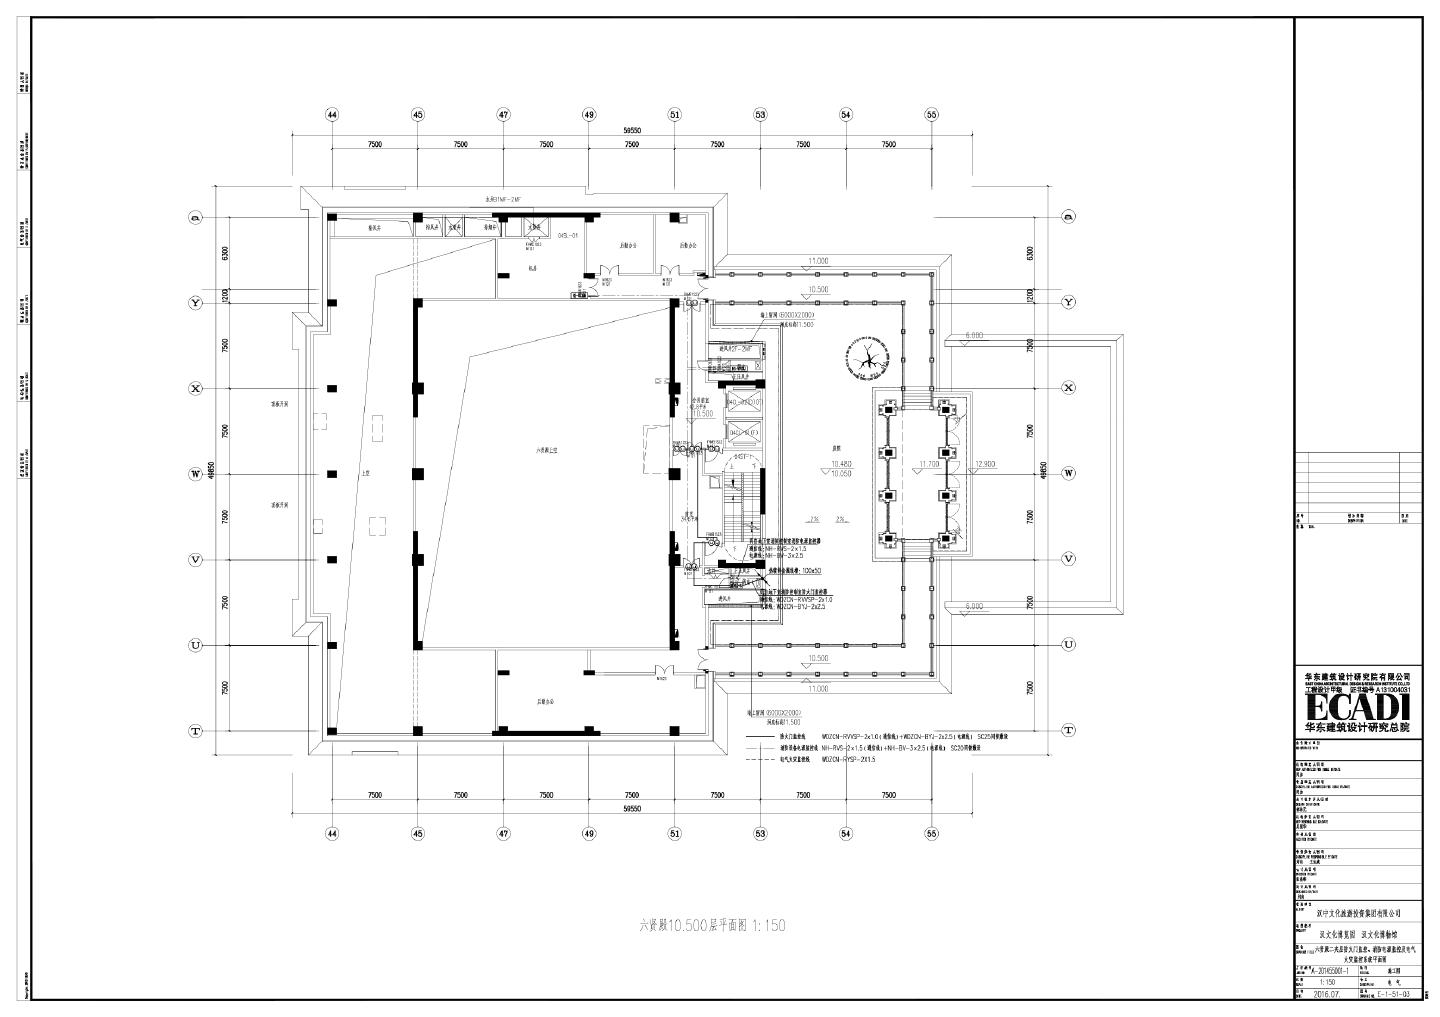 某某建筑六贤殿二夹层防火门监控-消防电源监控及电气火灾监控系统平面图CAD图